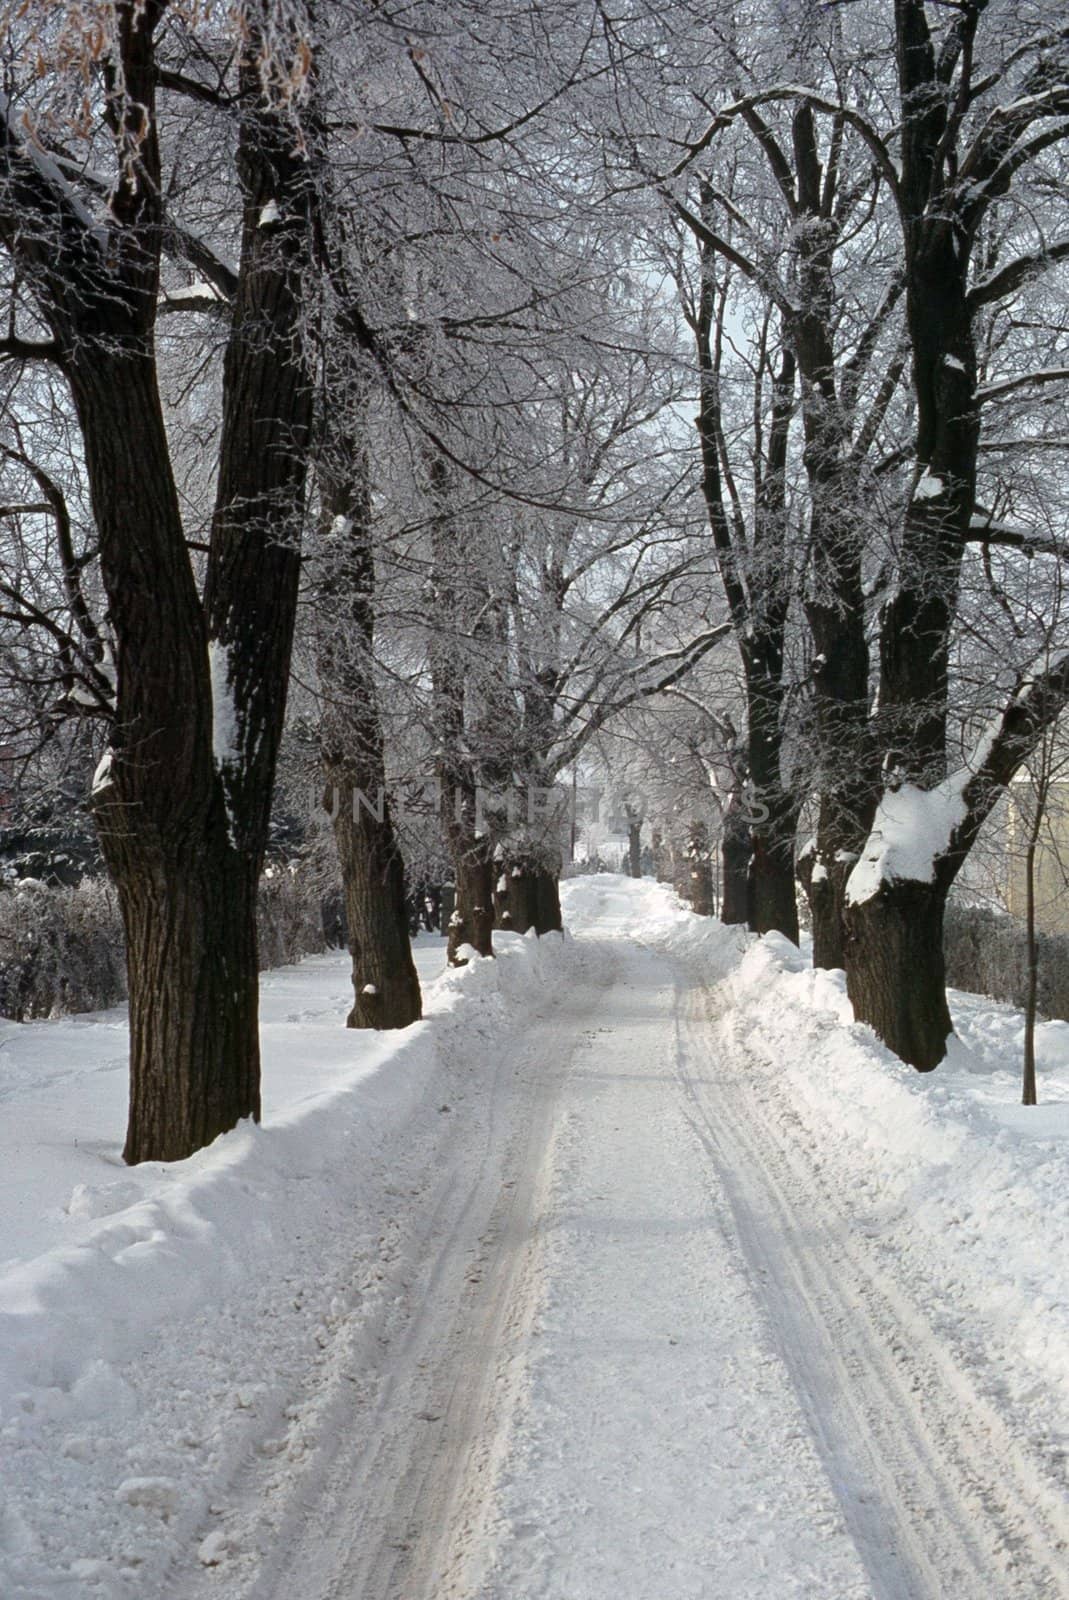 Snowy Road by jol66